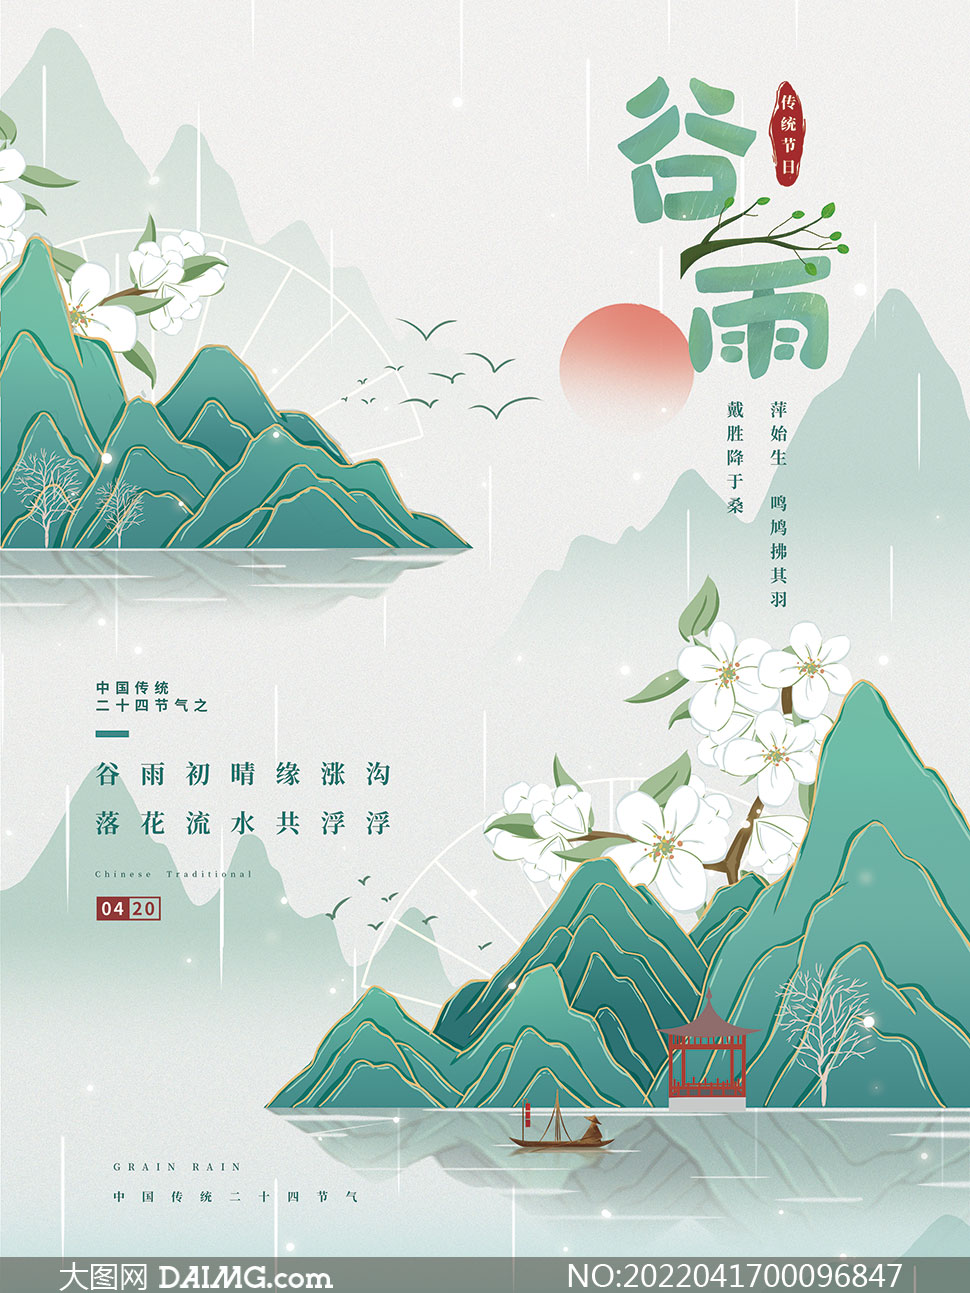 新中式主题谷雨节气宣传海报设计psd素材